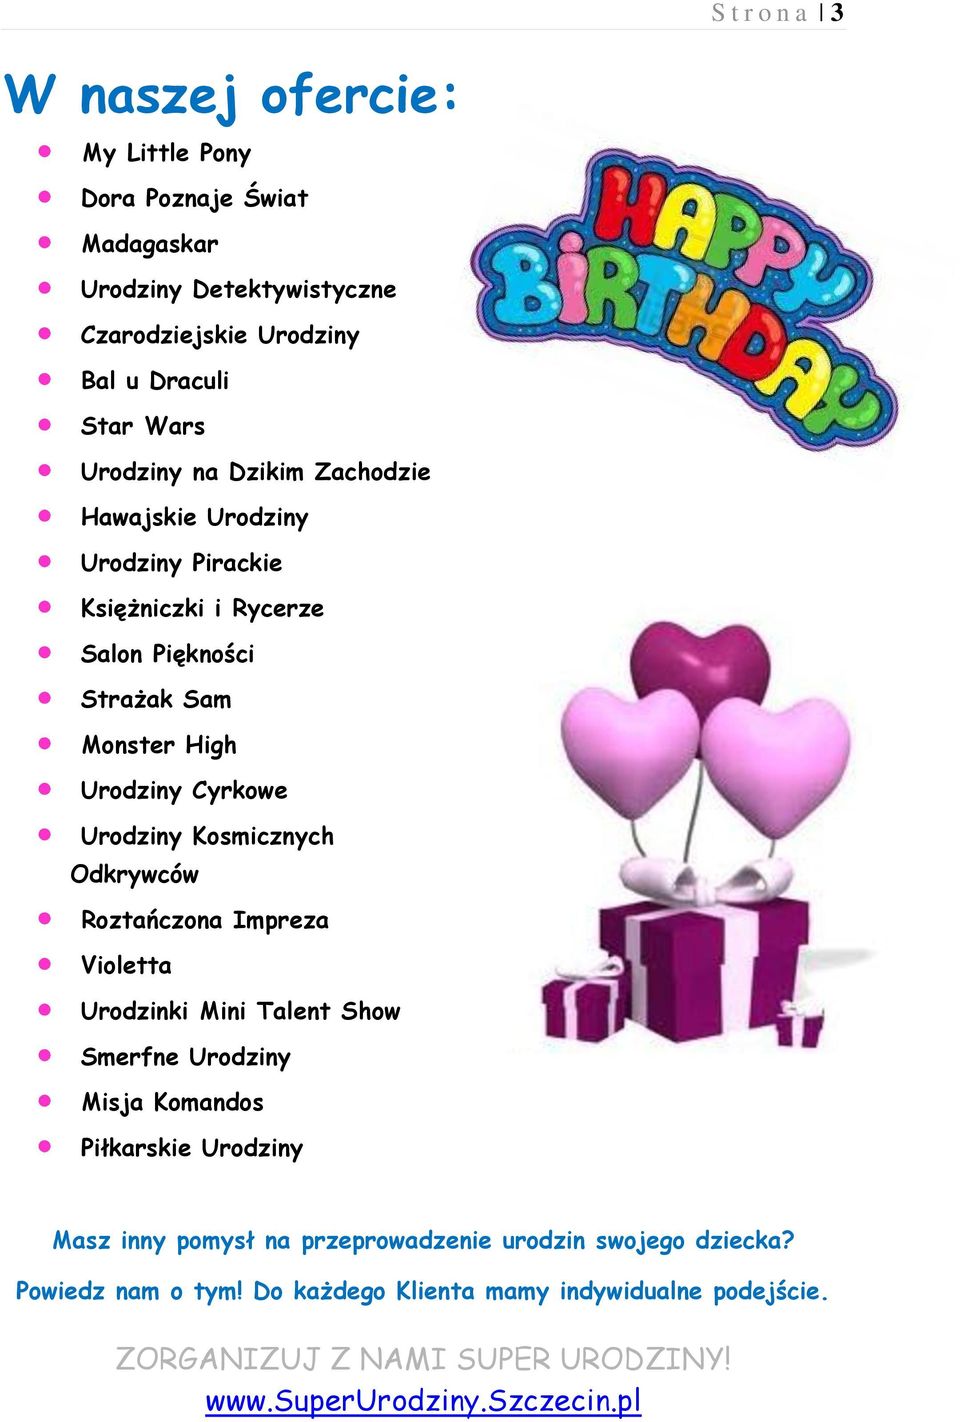 Urodziny Cyrkowe Urodziny Kosmicznych Odkrywców Roztańczona Impreza Violetta Urodzinki Mini Talent Show Smerfne Urodziny Misja Komandos